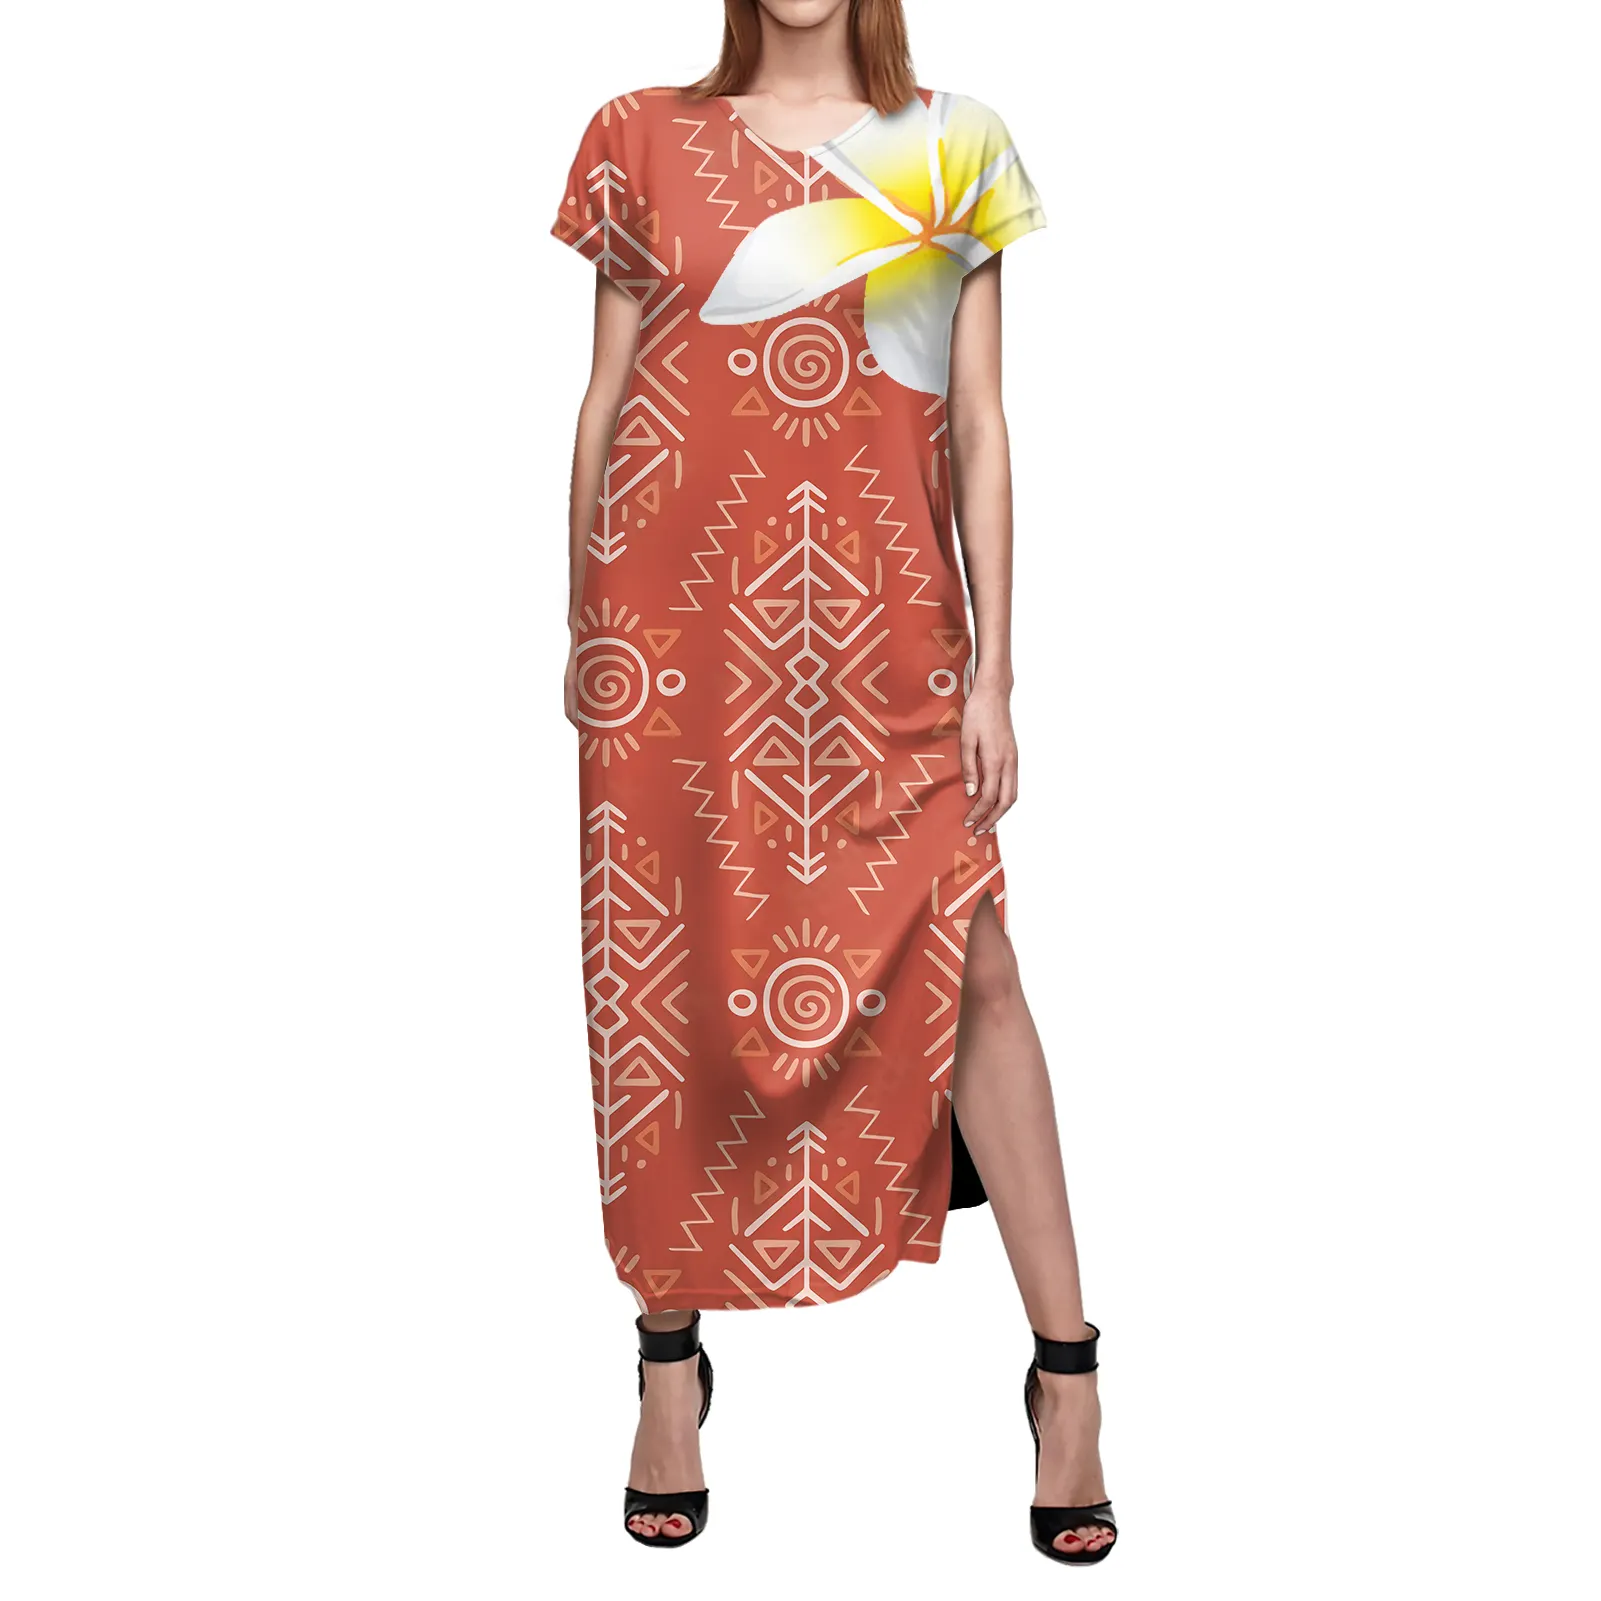 Vestido de manga corta de estilo étnico para mujer, vestido largo y sexi con estampado de isla polinesiana, color naranja